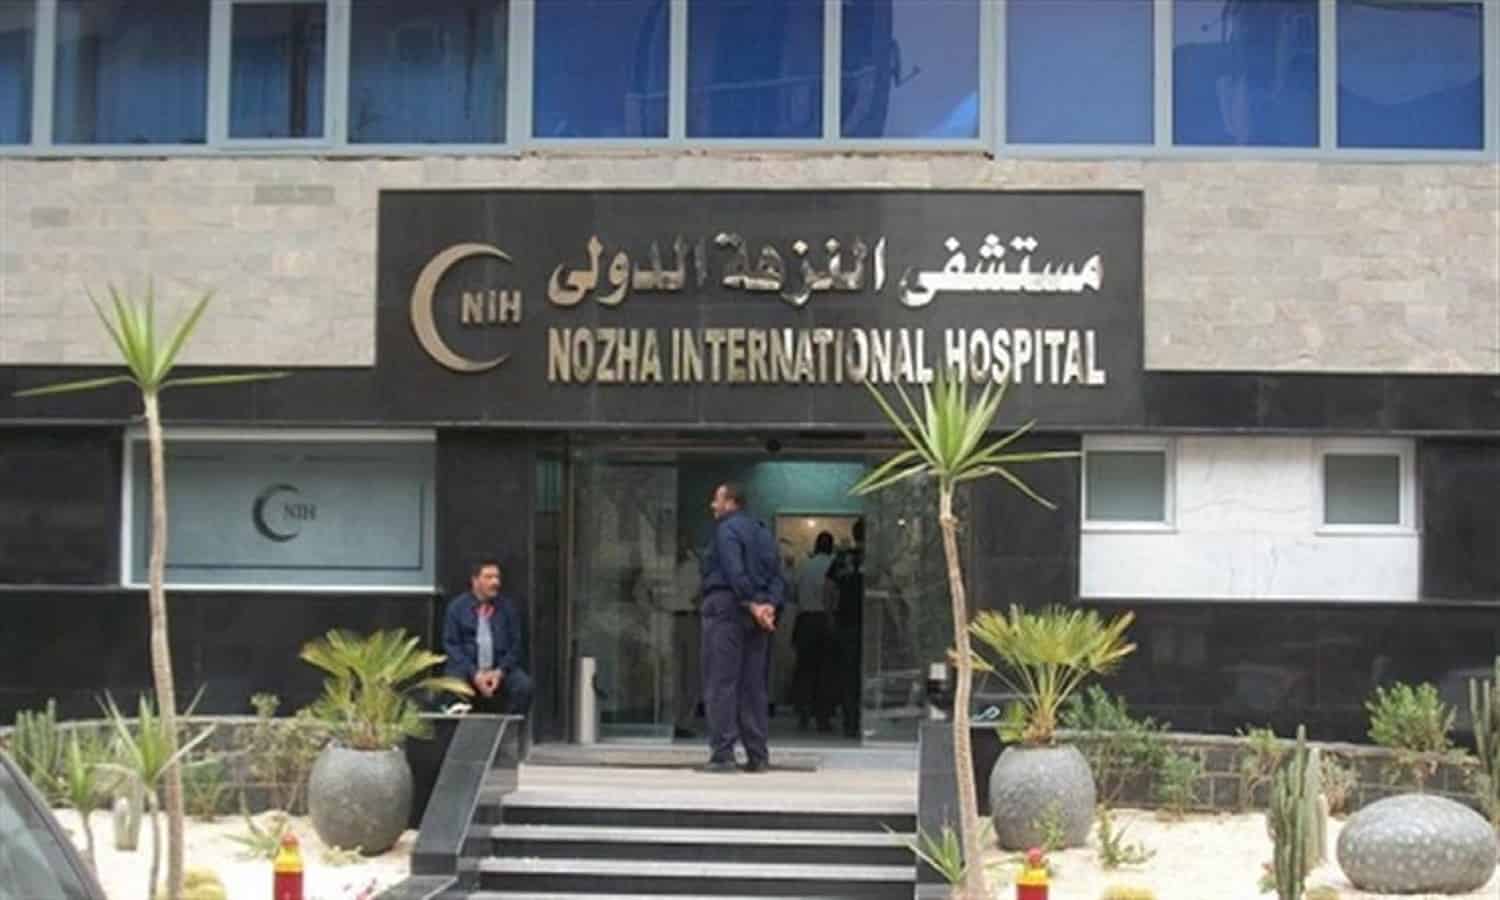 مستشفى النزهة الدولي تُقر زيادة رأس المال عن طريق أسهم مجانية
